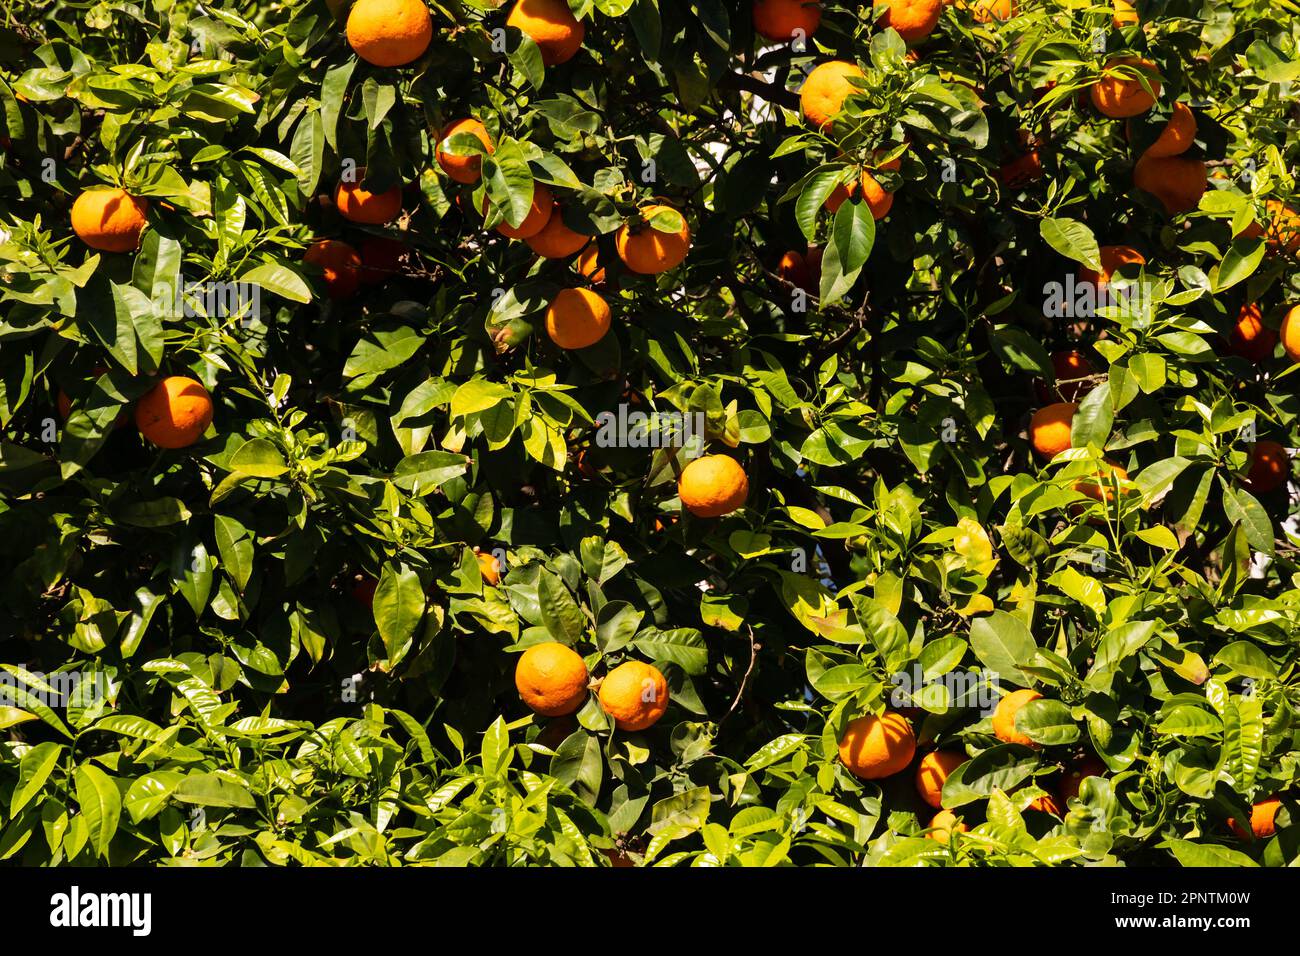 Frutta di arancia in alberi. Il territorio britannico d'oltremare di Gibilterra, la roccia di Gibilterra sulla penisola iberica. Foto Stock